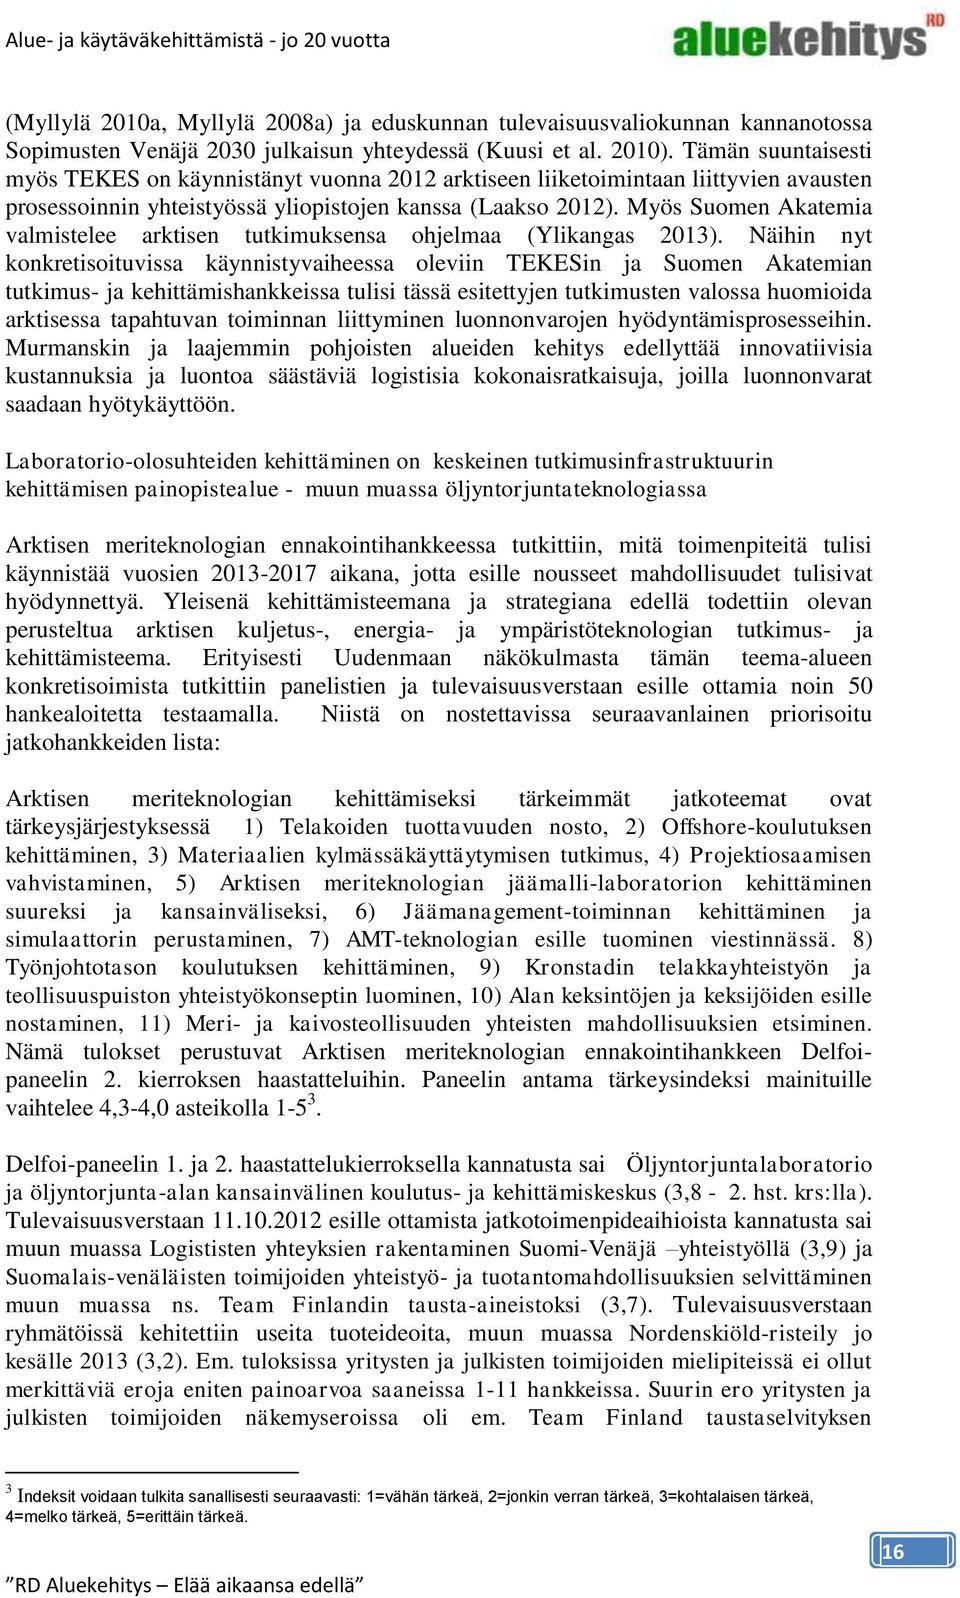 Myös Suomen Akatemia valmistelee arktisen tutkimuksensa ohjelmaa (Ylikangas 2013).